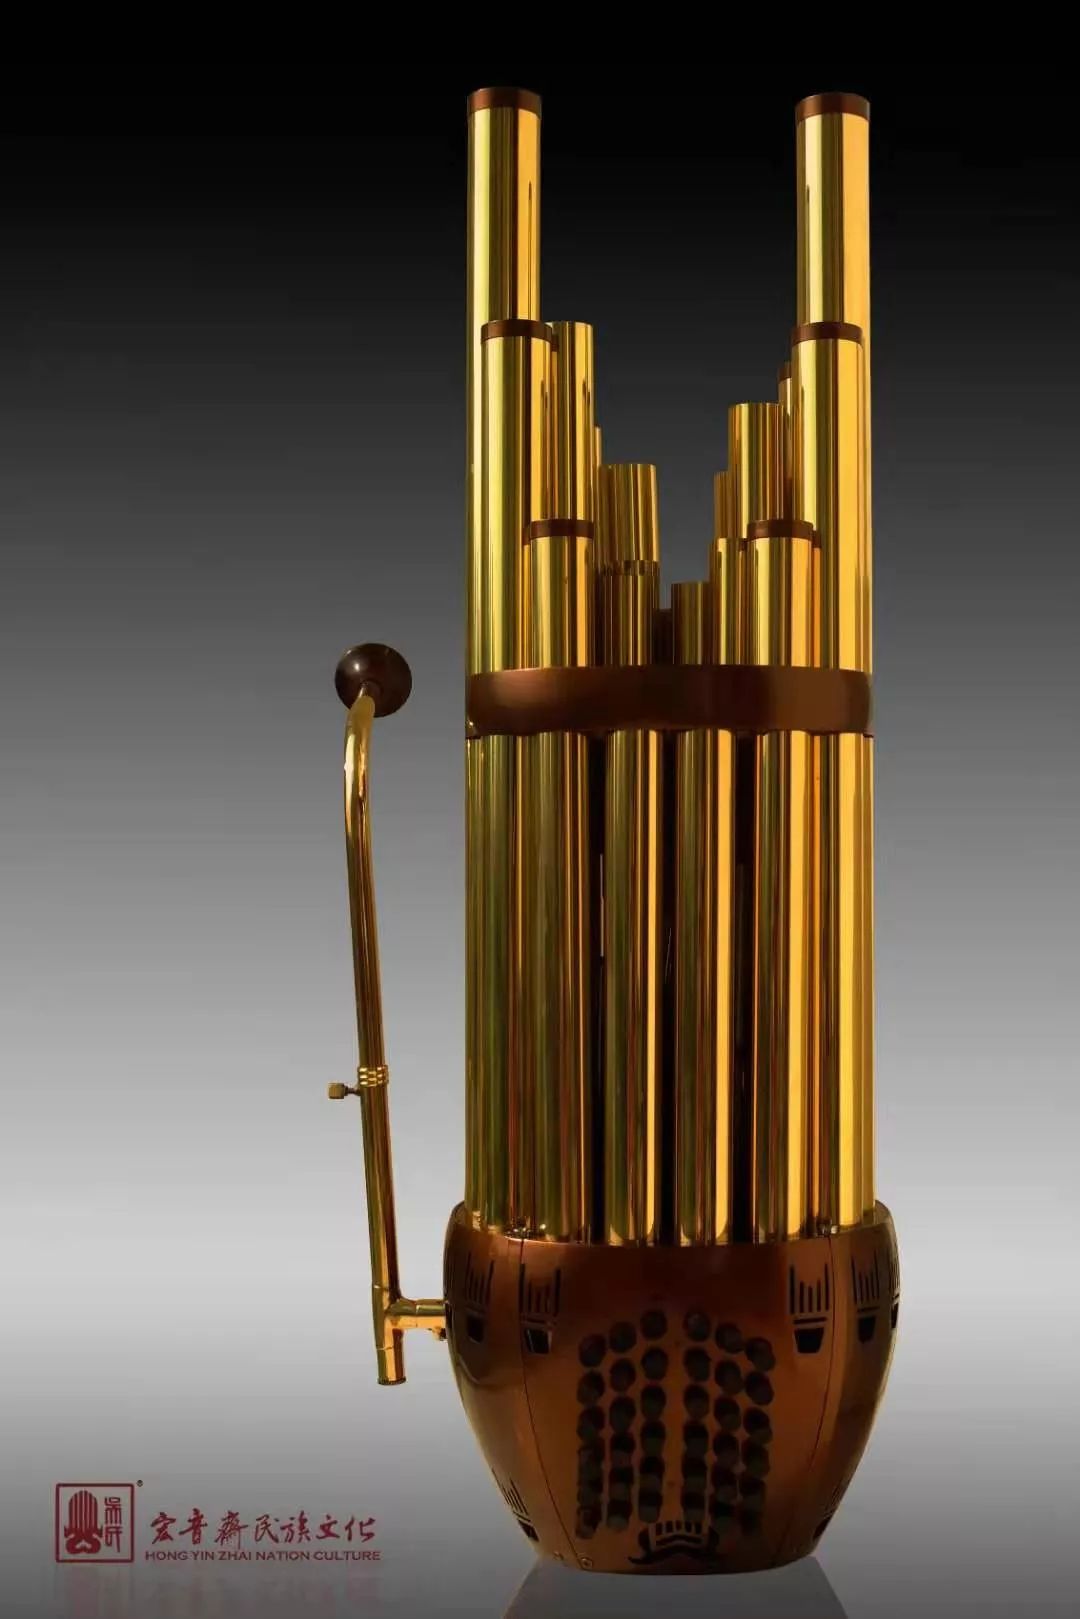 管乐创始于清代后期,是中国唯一从清宫内廷中传承延续的乐器制作技艺